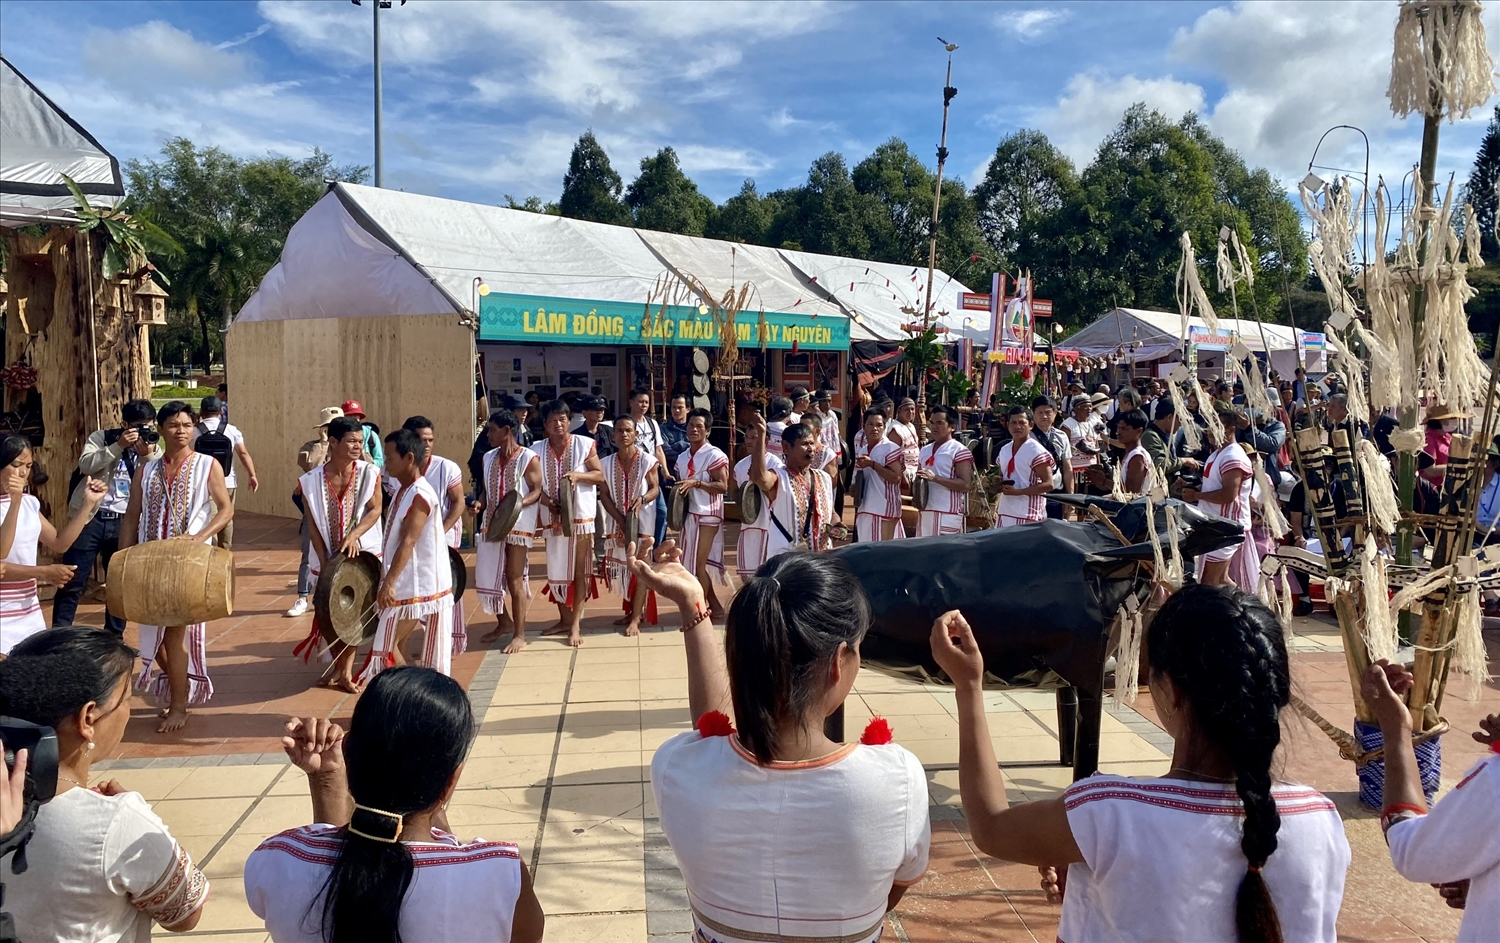 Đồng bào Rơ Măm ở làng Le, xã Mô Rai, huyện Sa Thầy, tỉnh Kon Tum trình diễn Lễ mở cửa kho lúa